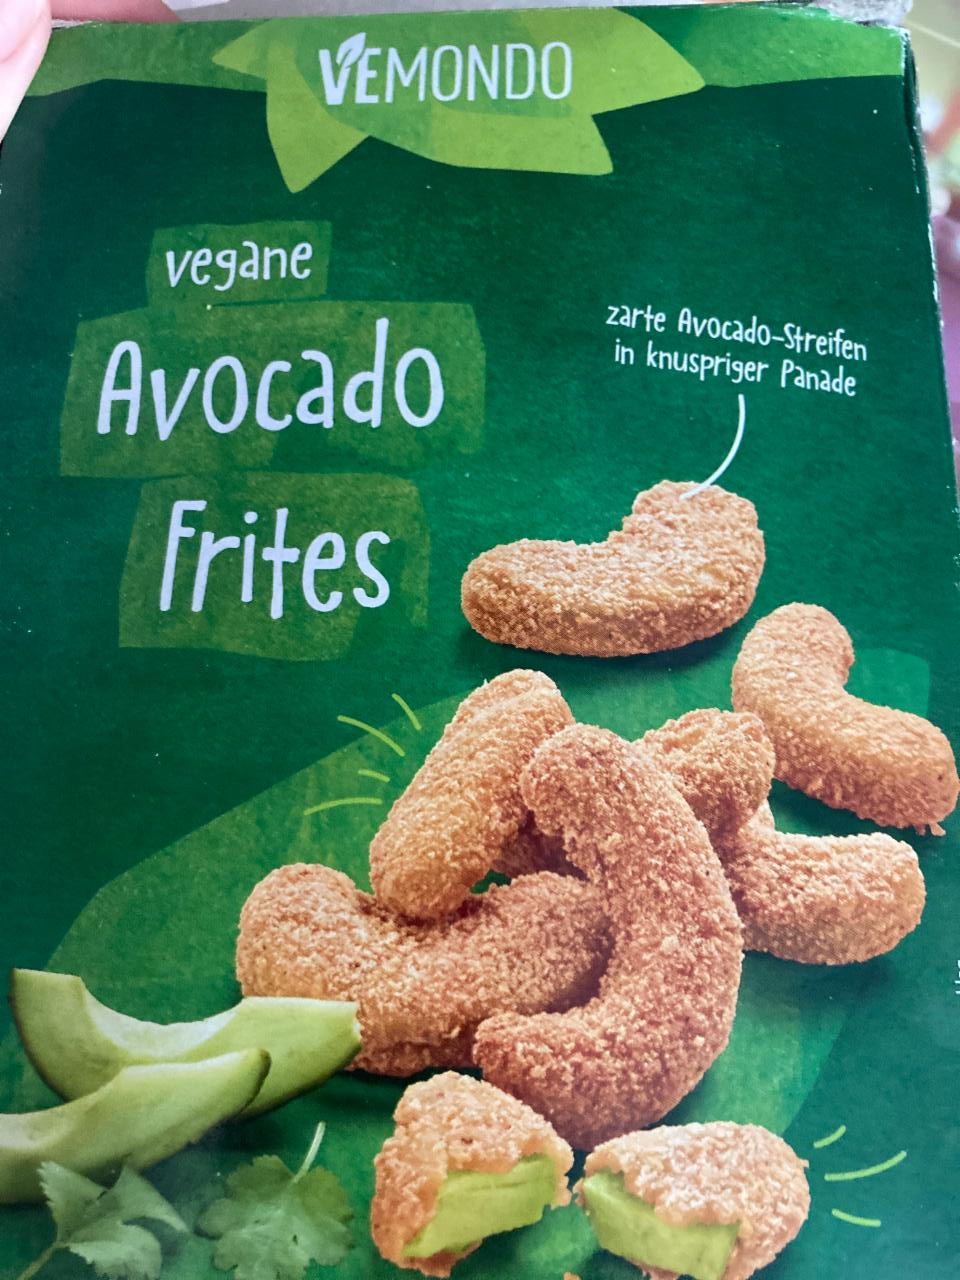 a kalorie, kJ - Frites hodnoty Vegane nutriční Vemondo Avocado